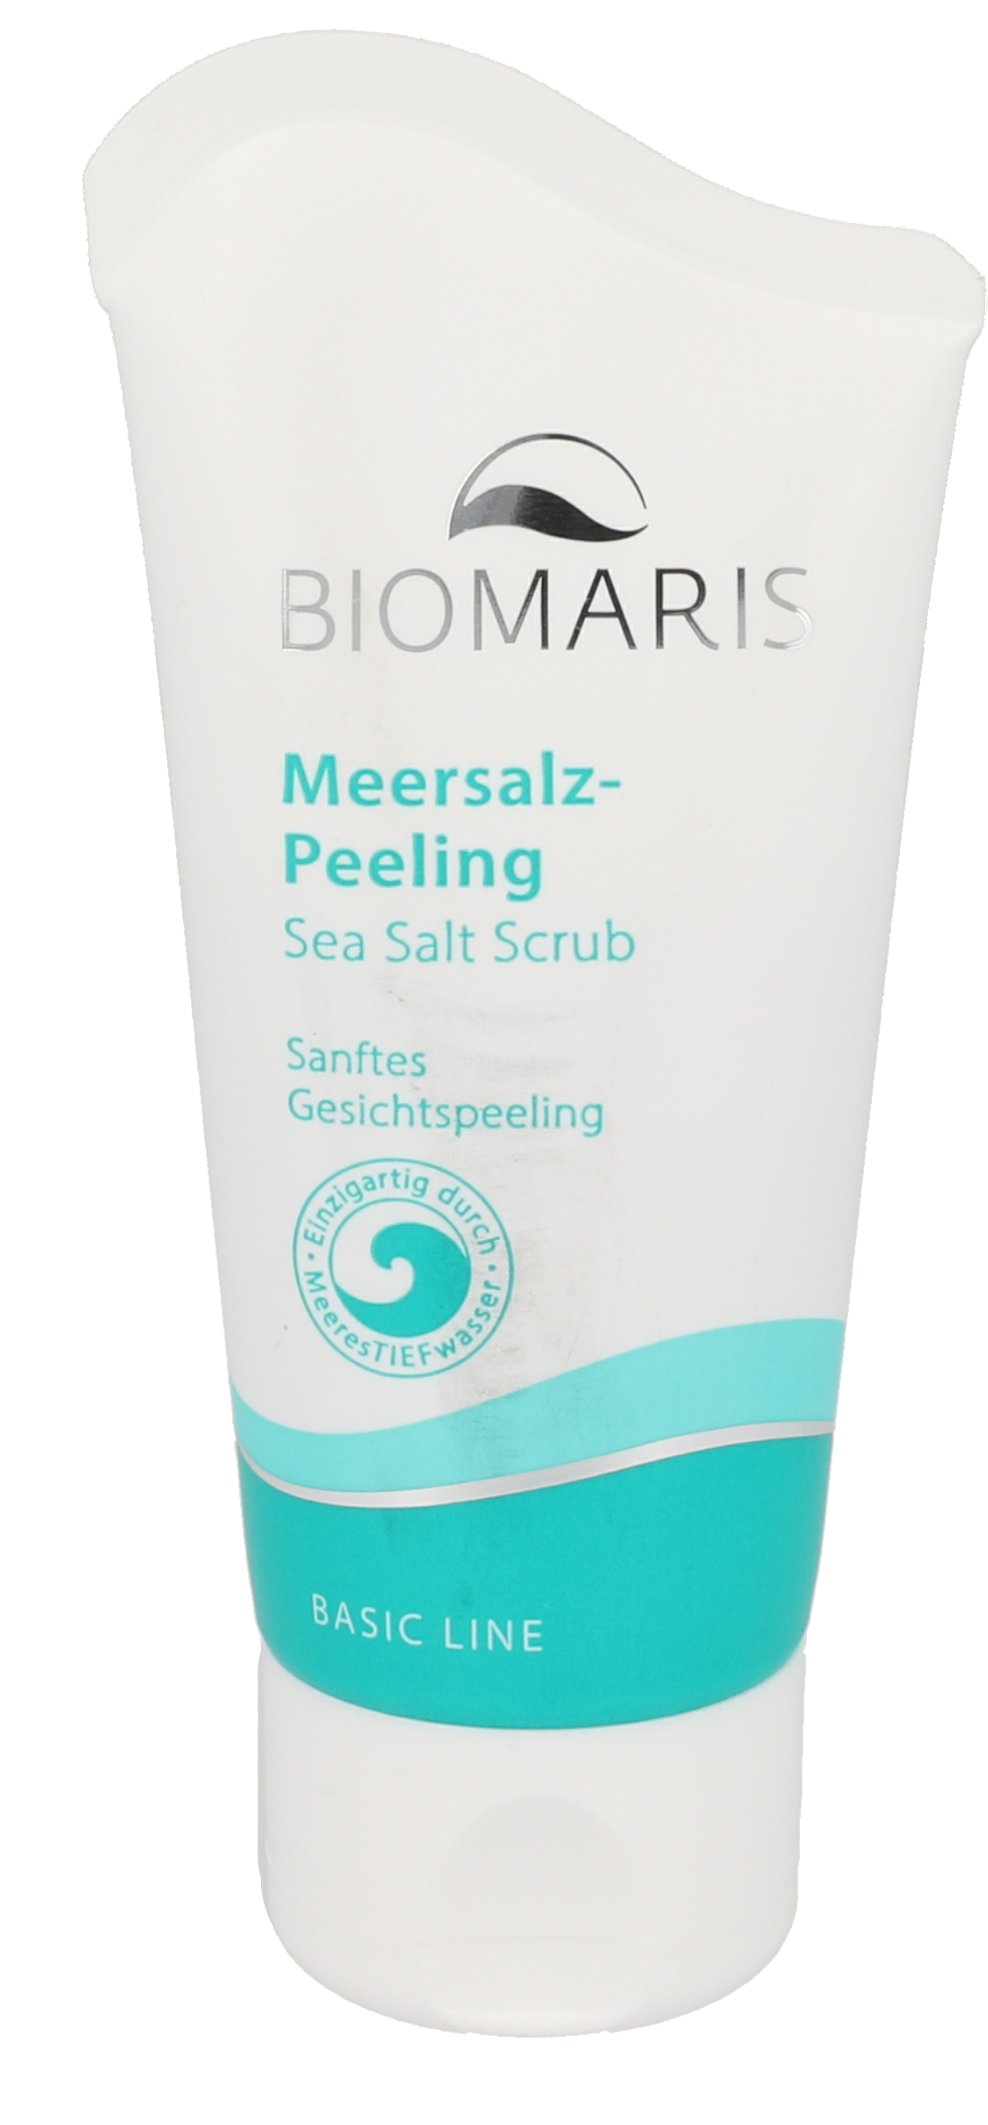 BIOMARIS Meersalz-Peeling